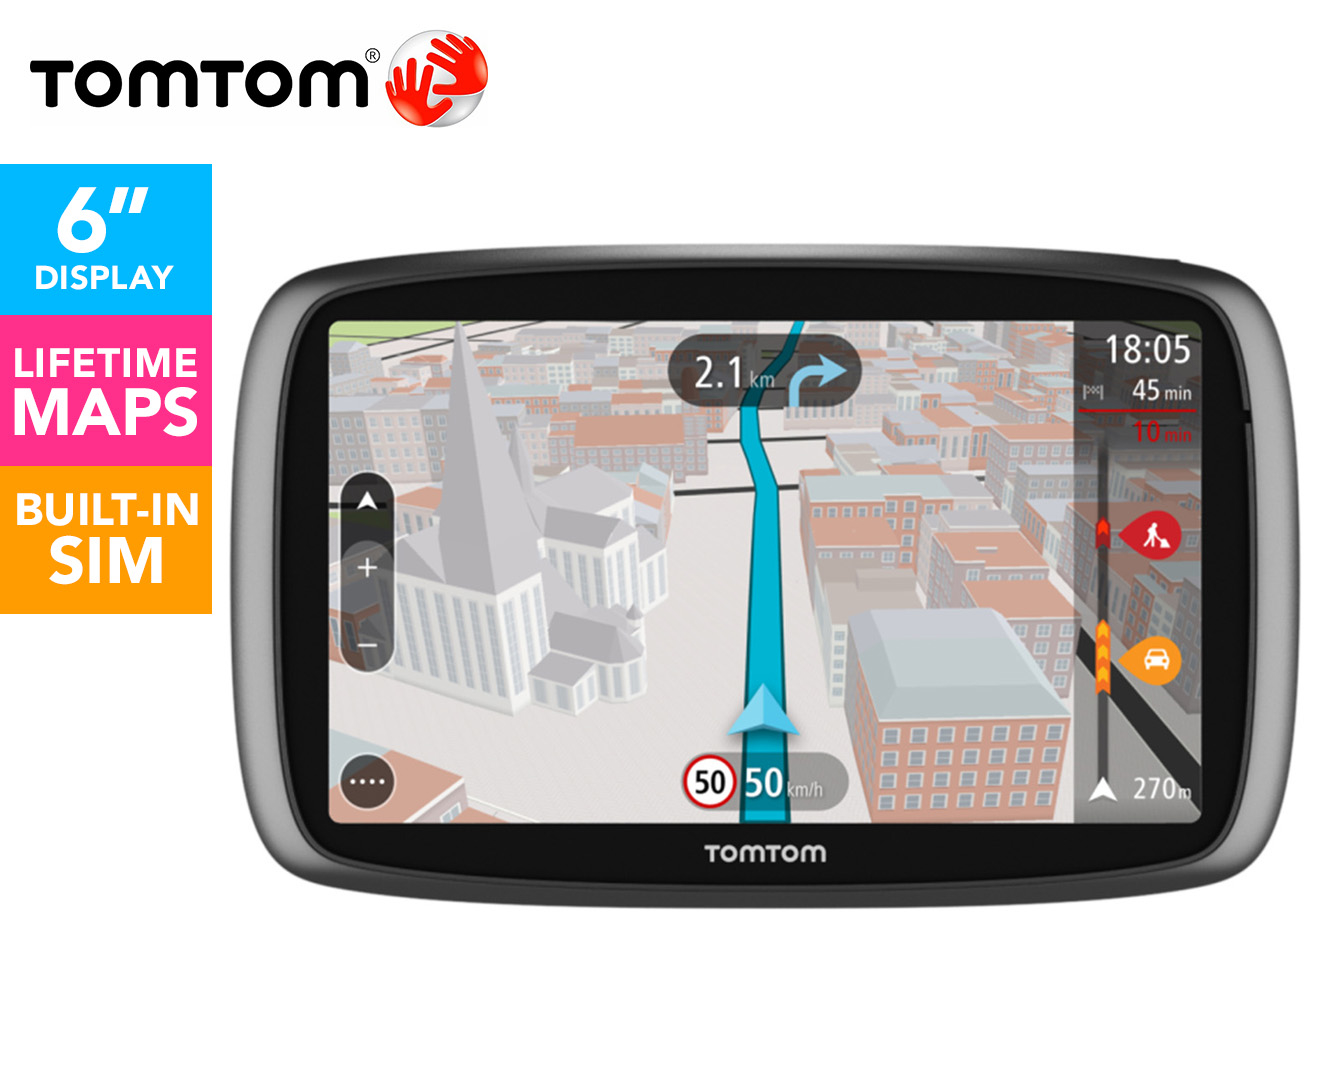 TomTom 6" Touchscreen GO6100 GPS - Black